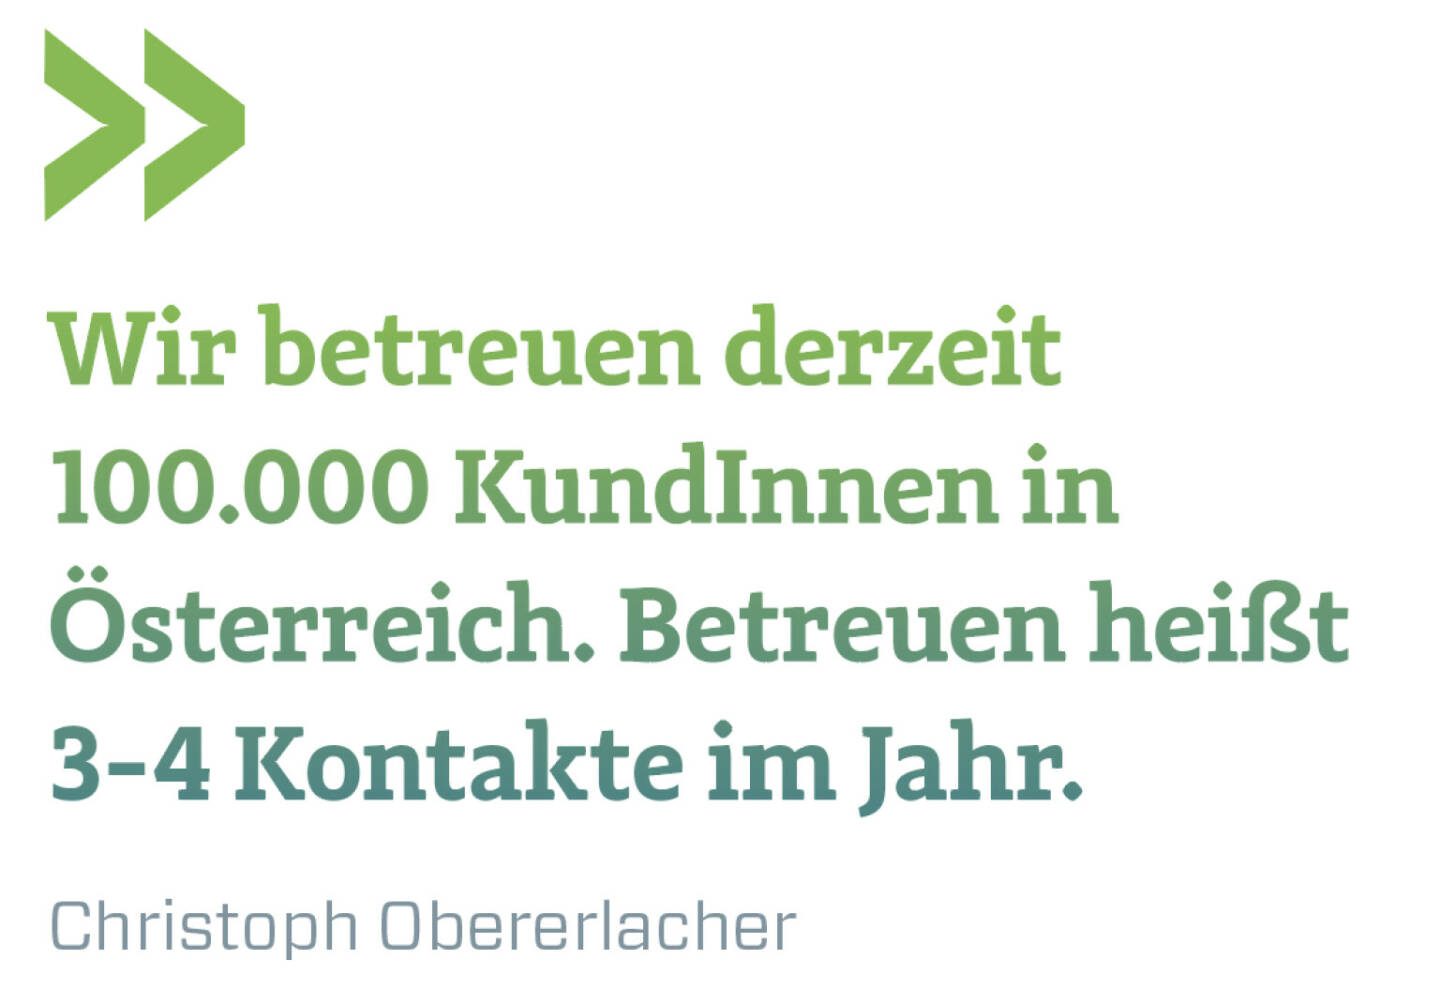 Wir betreuen derzeit 100.000 KundInnen in Österreich. Betreuen heißt 3-4 Kontakte im Jahr.
Christoph Obererlacher